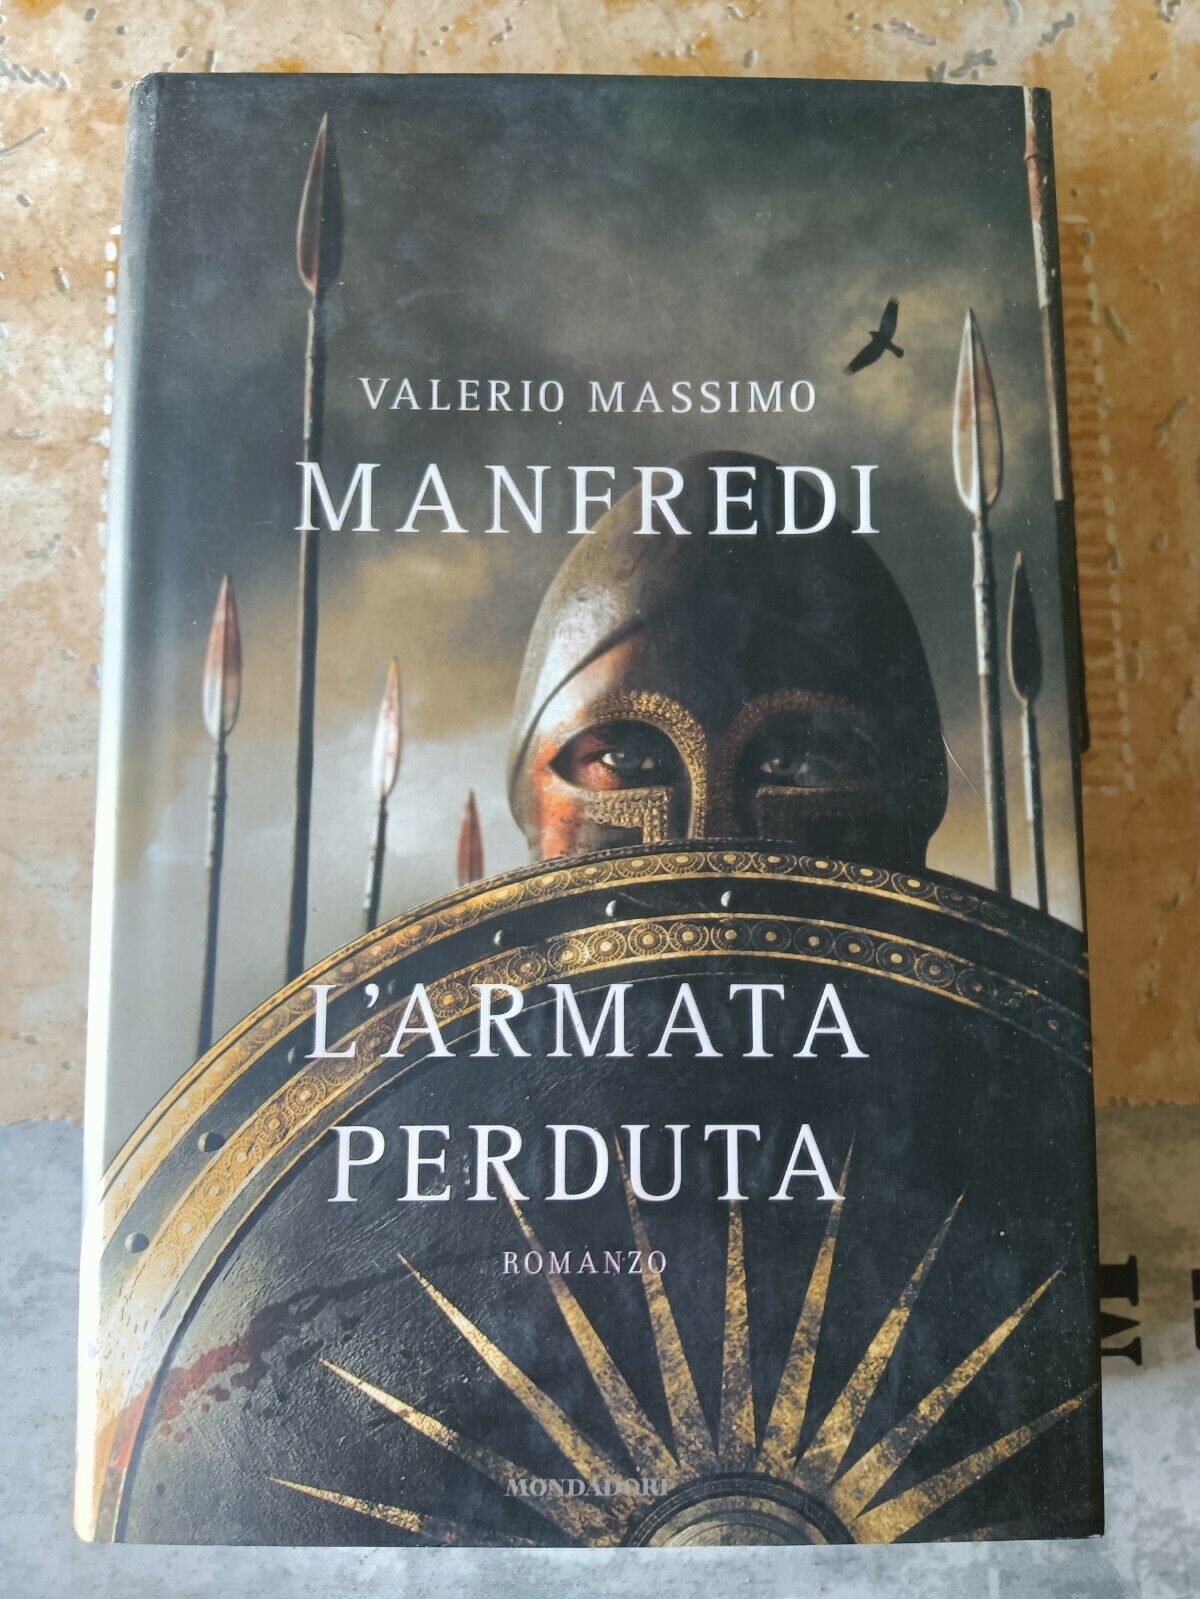 L’armata perduta | Manfredi - Mondadori